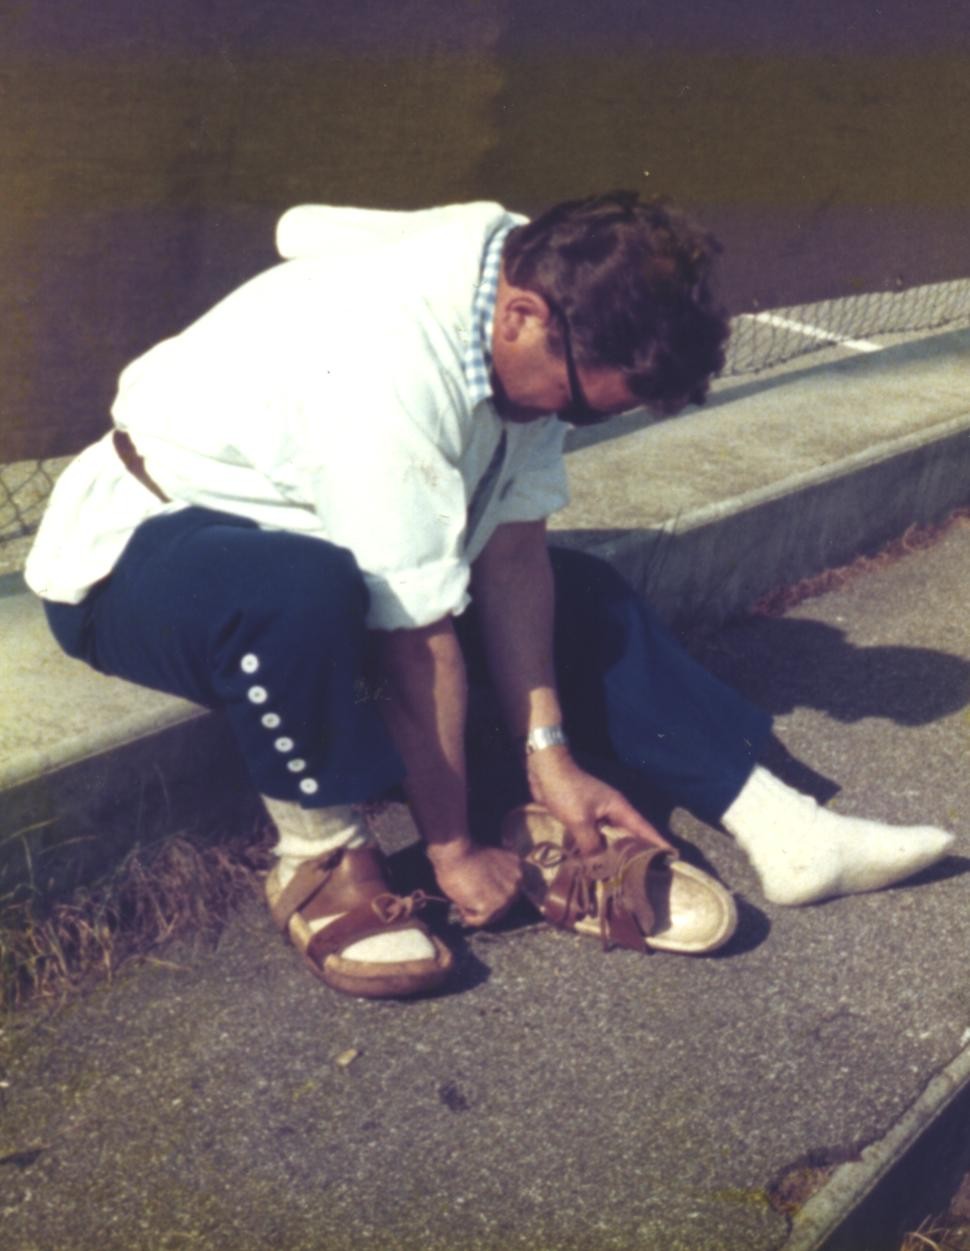 1977 Jean am "anpassen" seines Holzschuhs